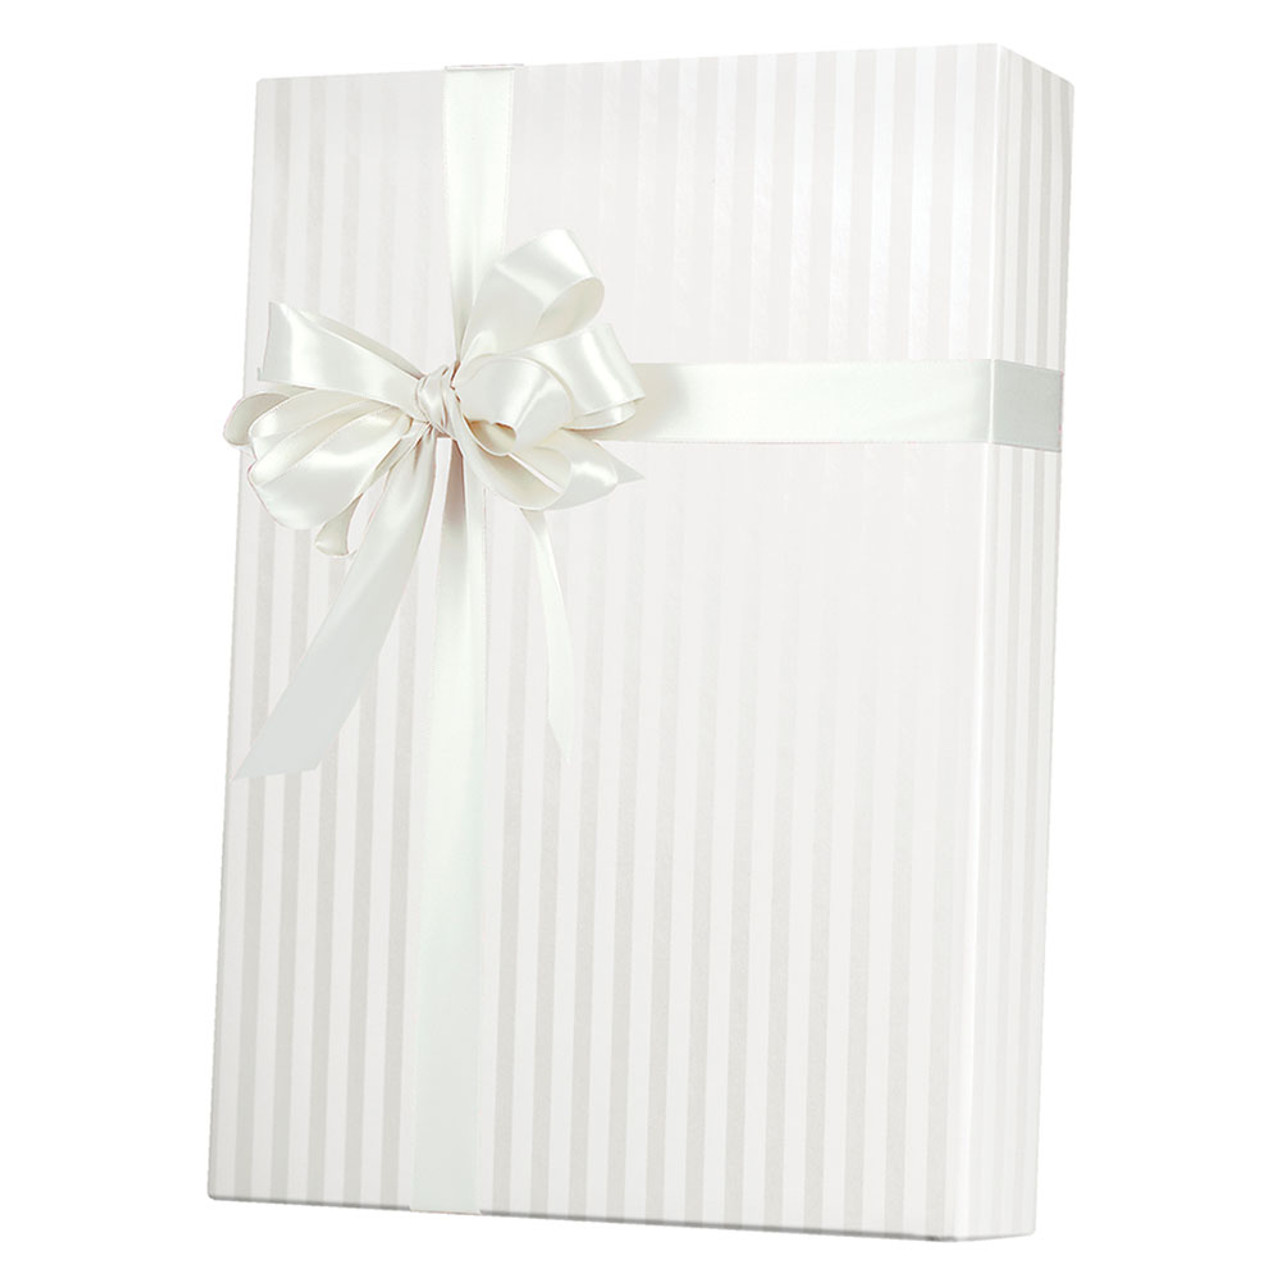 24" x 833' Pearl Stripe Gift Wrap